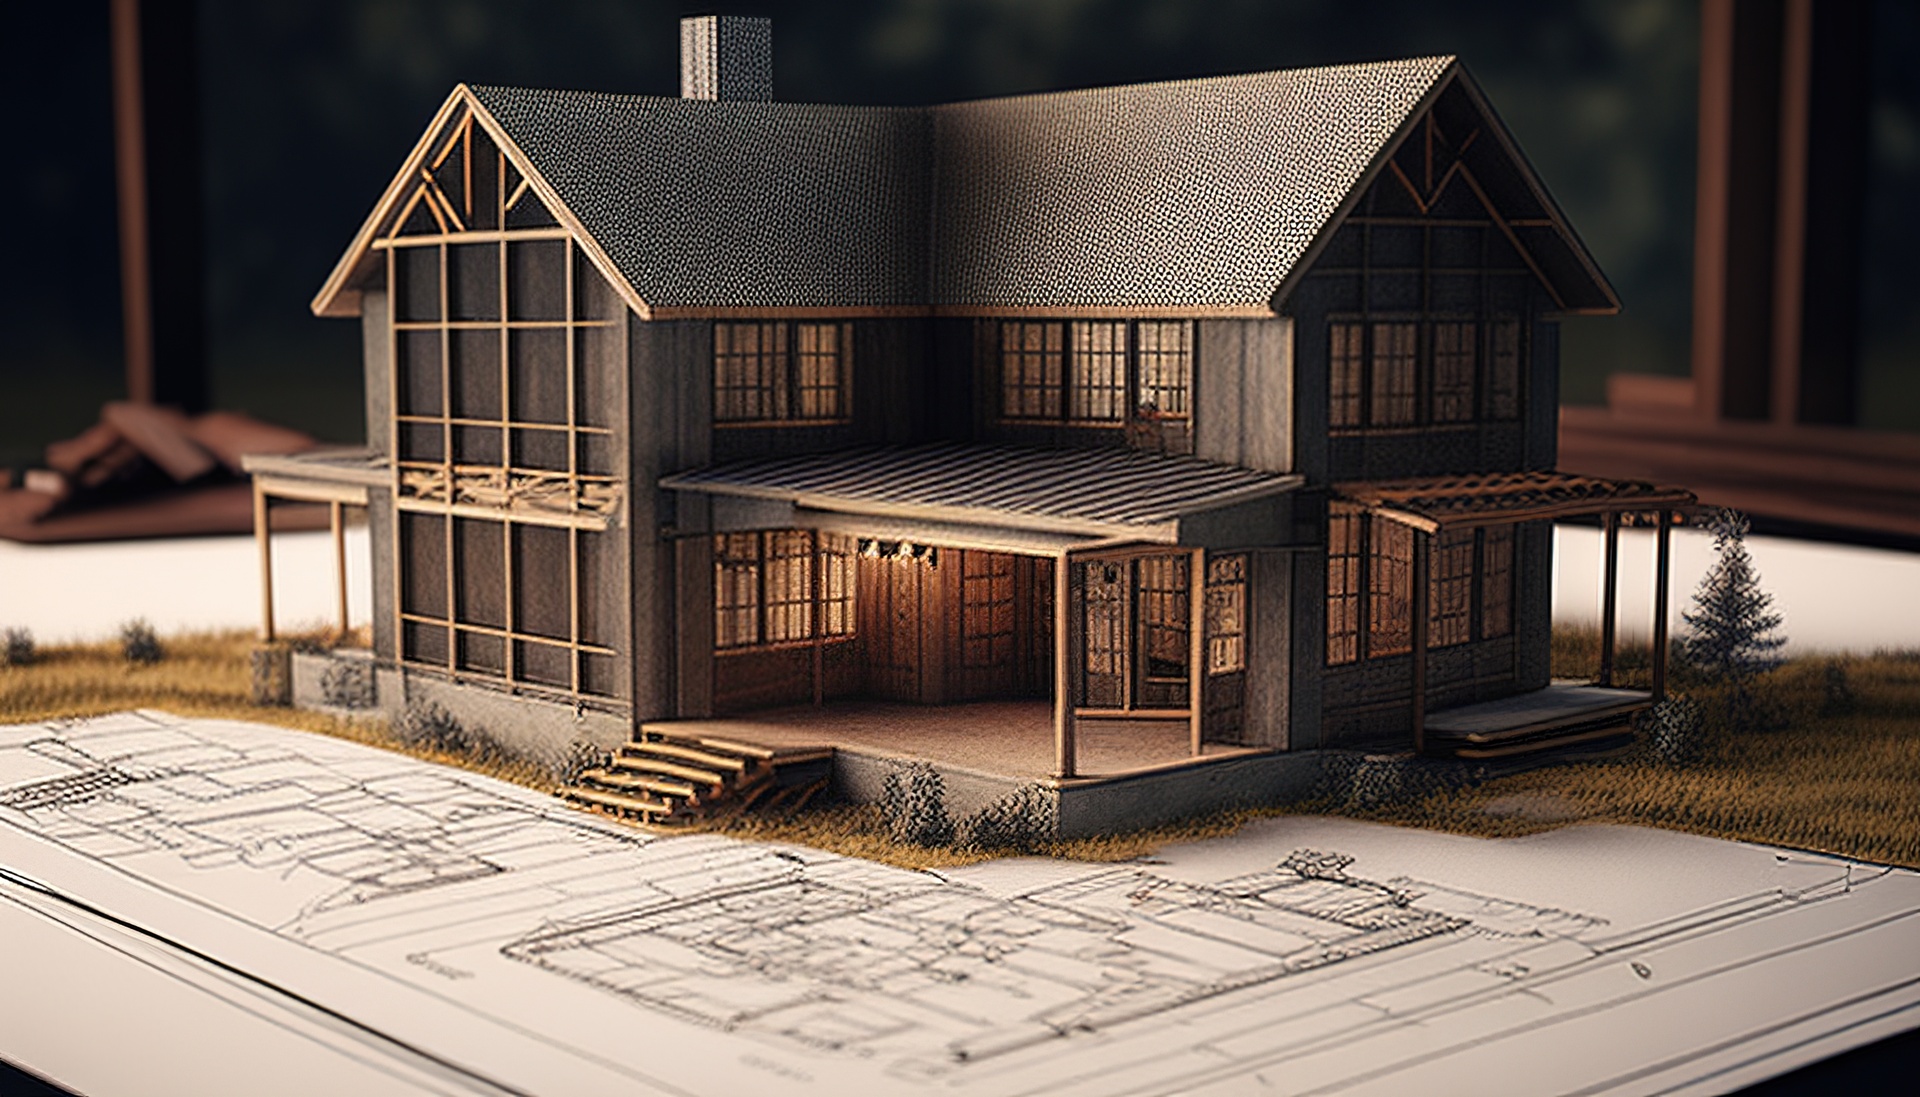 Dom na planie, cyfrowa ilustracja artystyczna prezentująca szacunkowy koszt budowy domu 2022